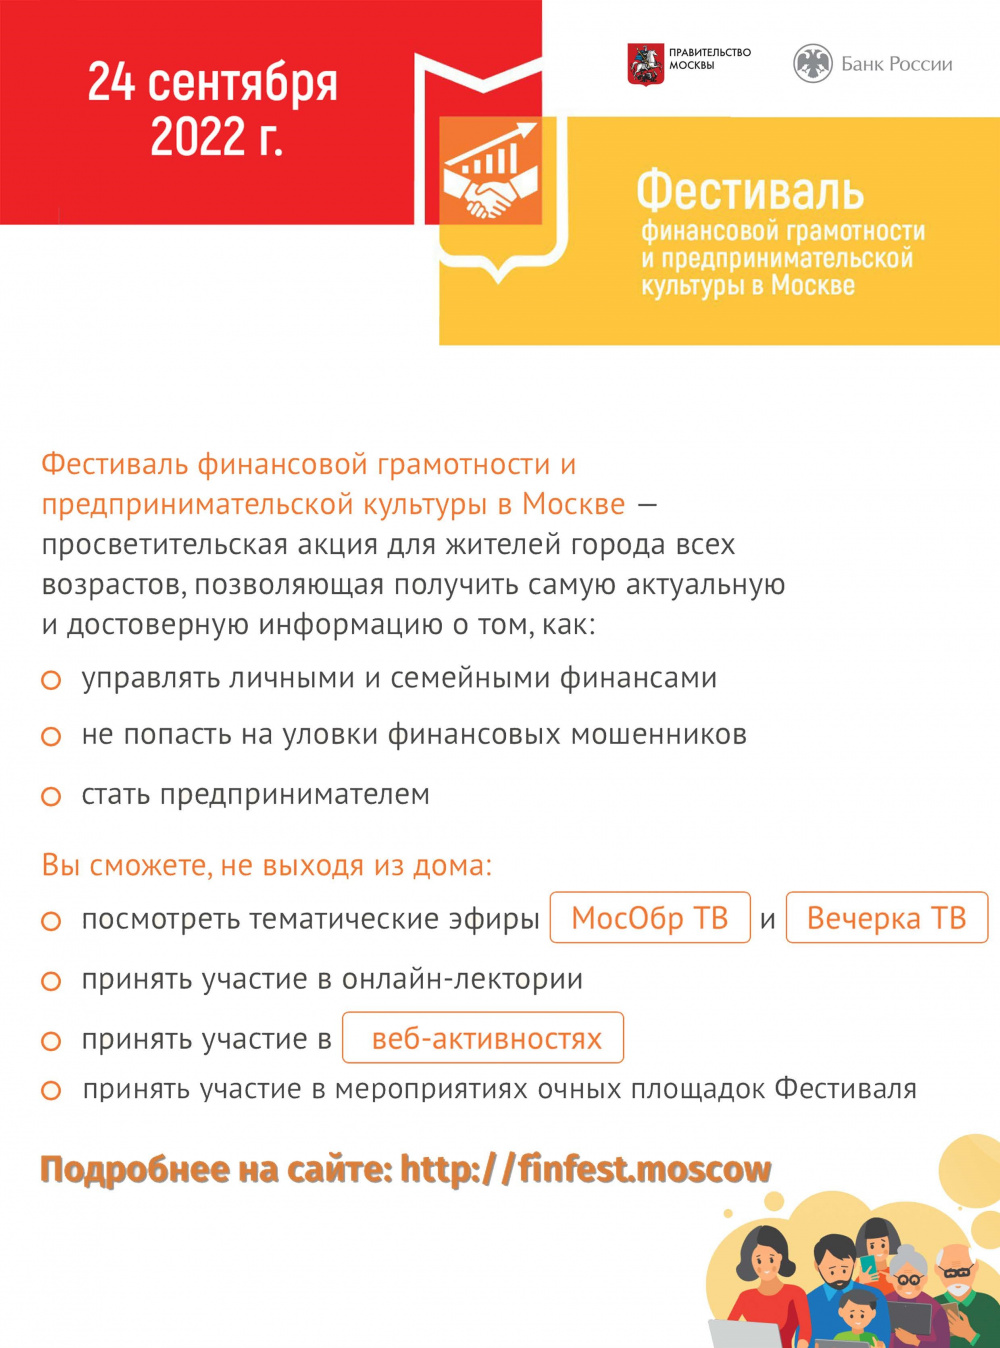 Фестиваль финансовой грамотности 24.09.2022 г.